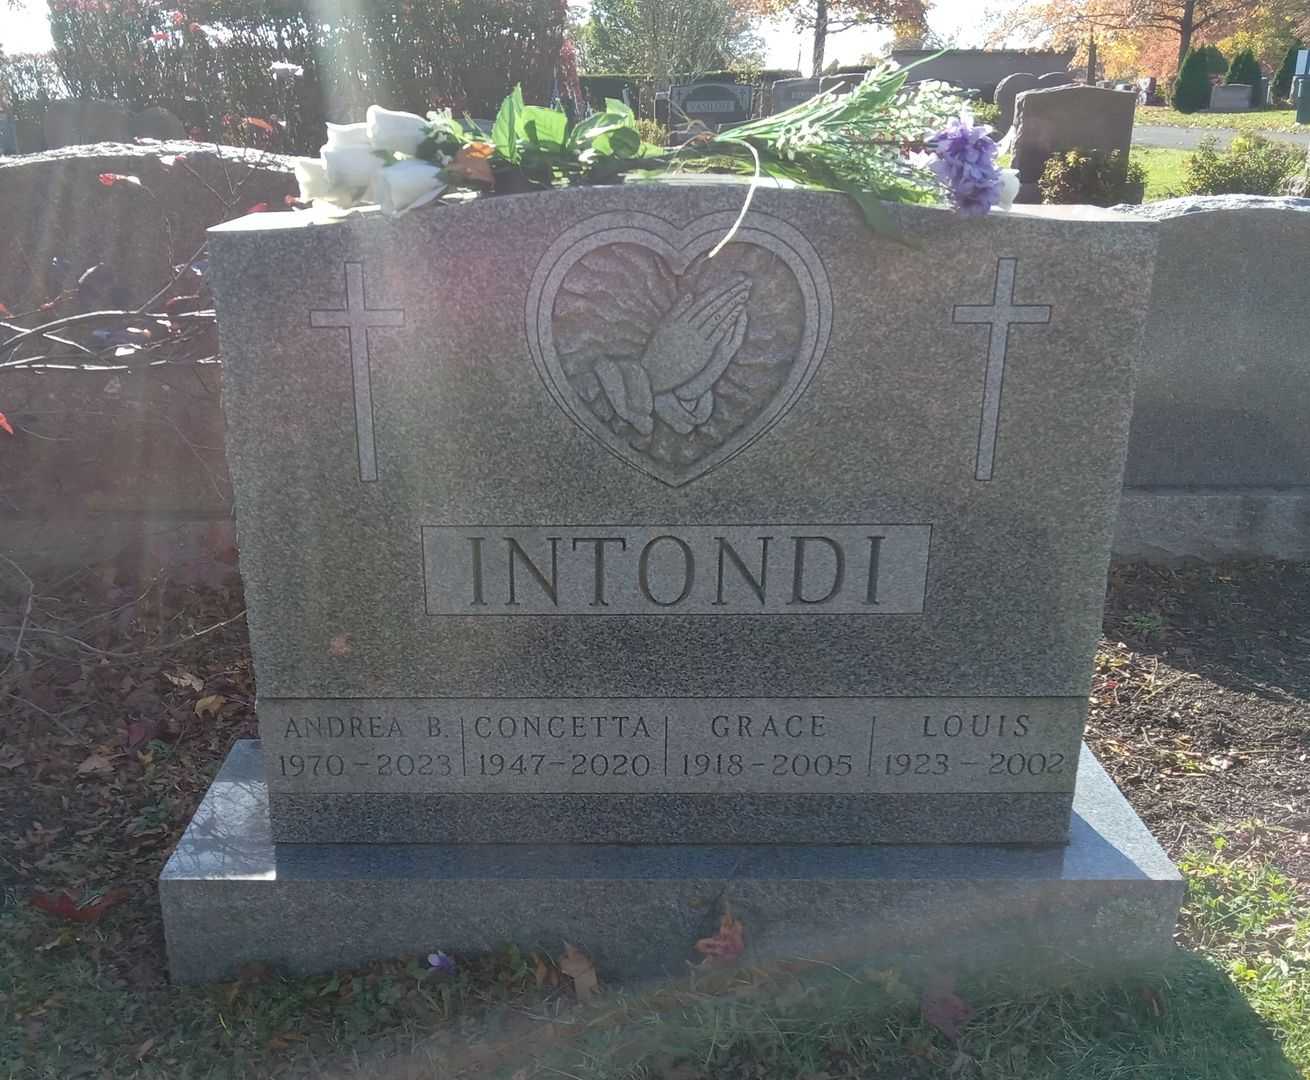 Andrea Boccardo's grave